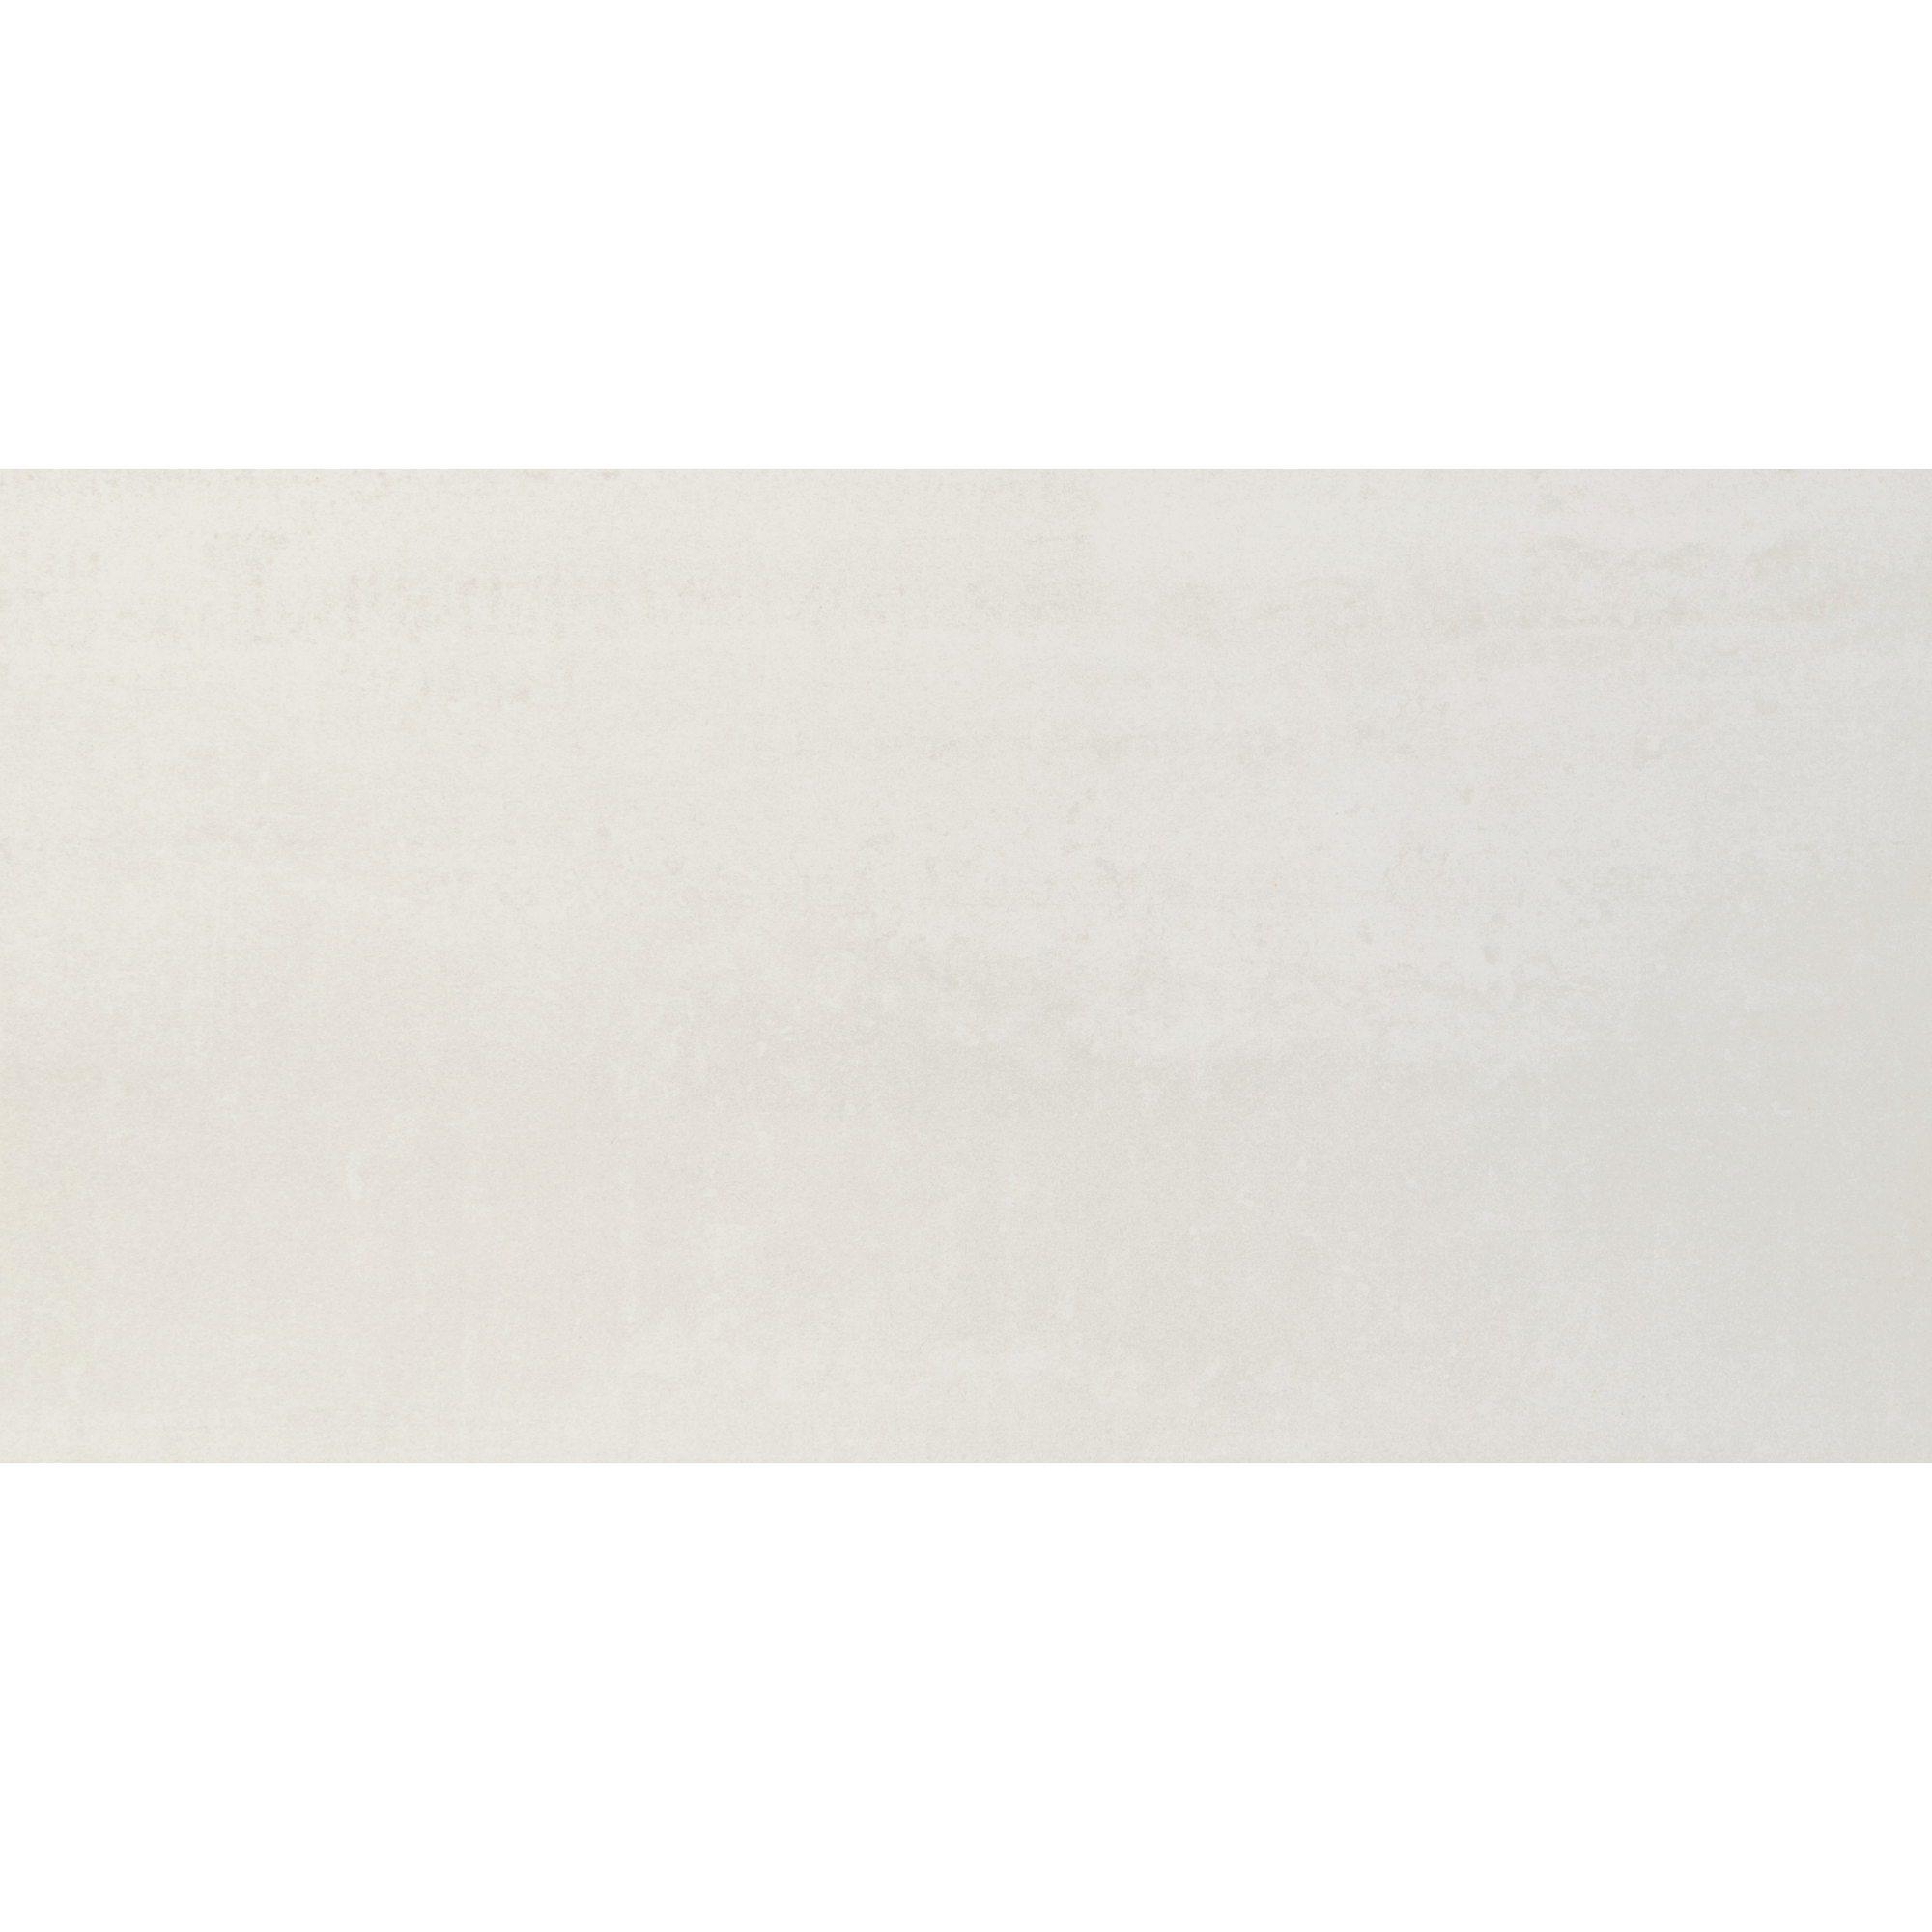 Wandfliese 'Massai' Steingut weiß 30 x 60 cm + product picture